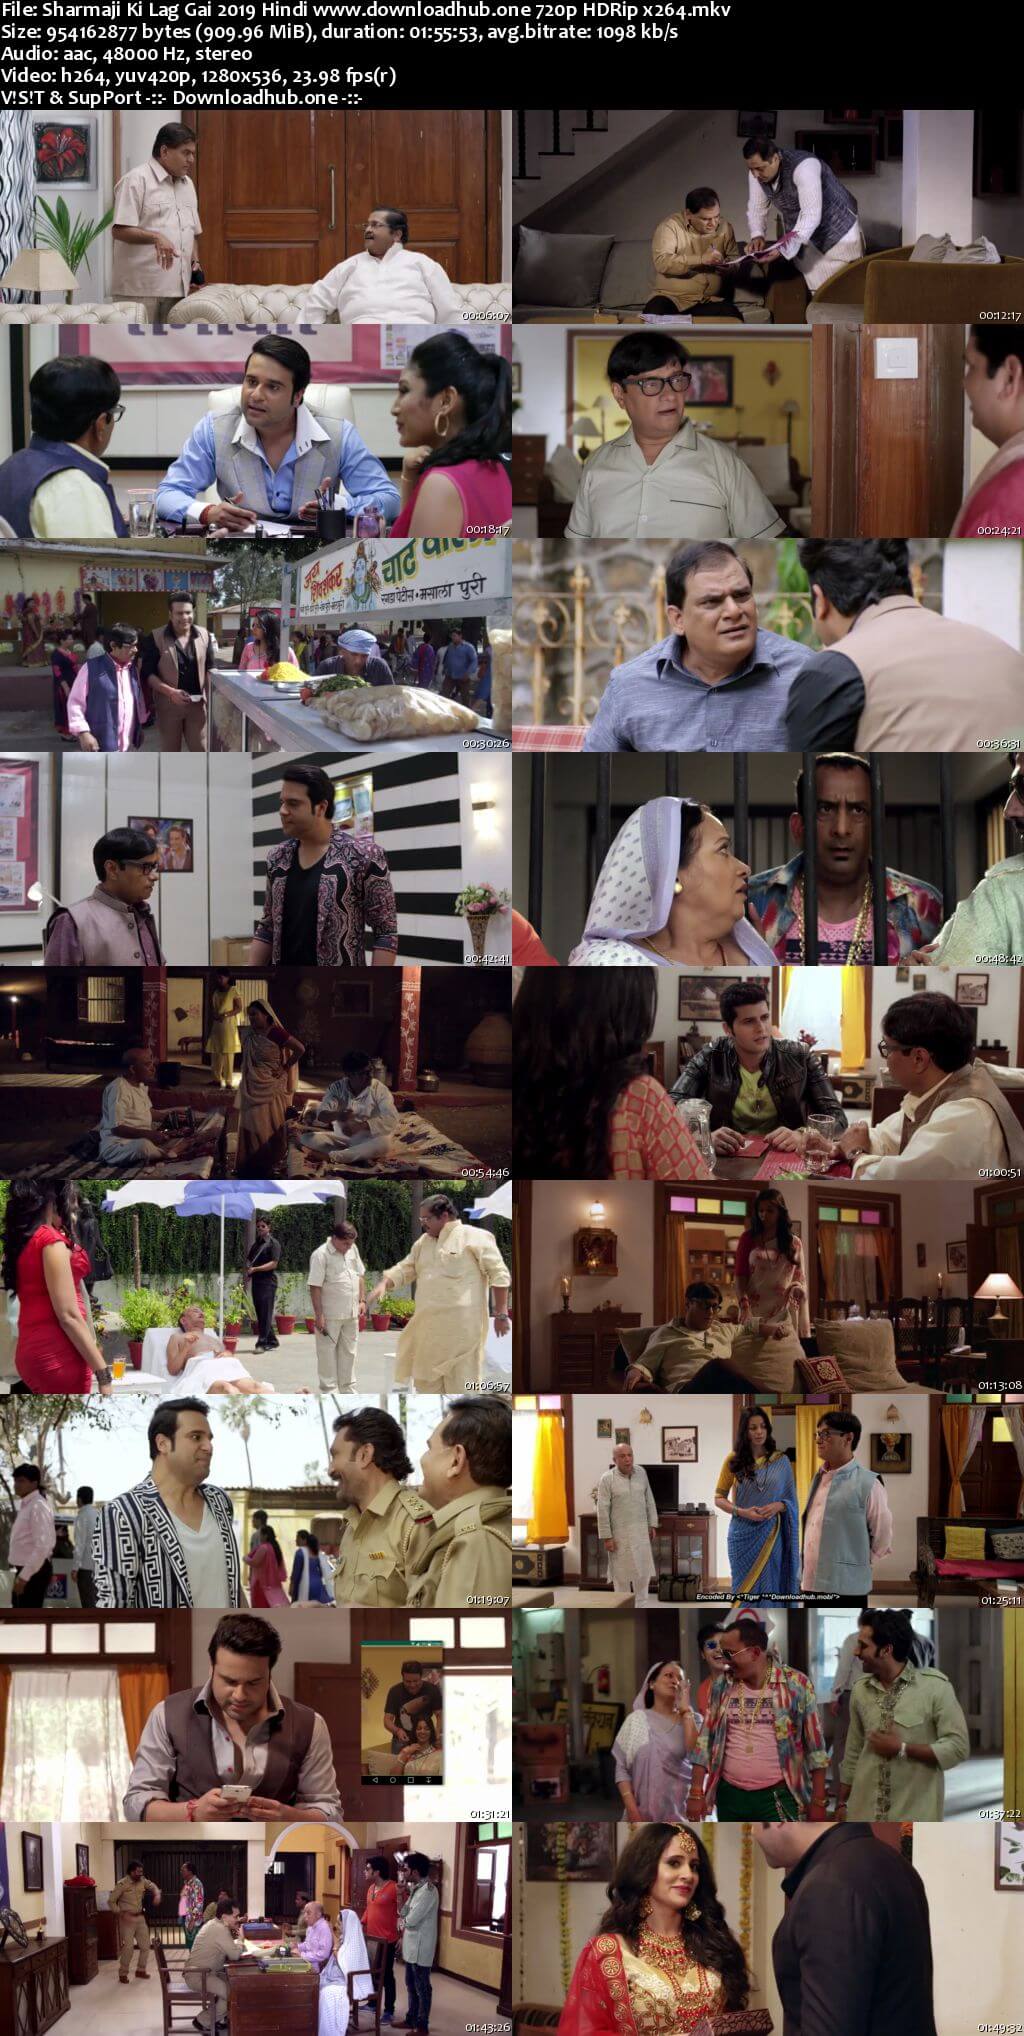 Sharmaji Ki Lag Gai 2019 Hindi 720p HDRip x264